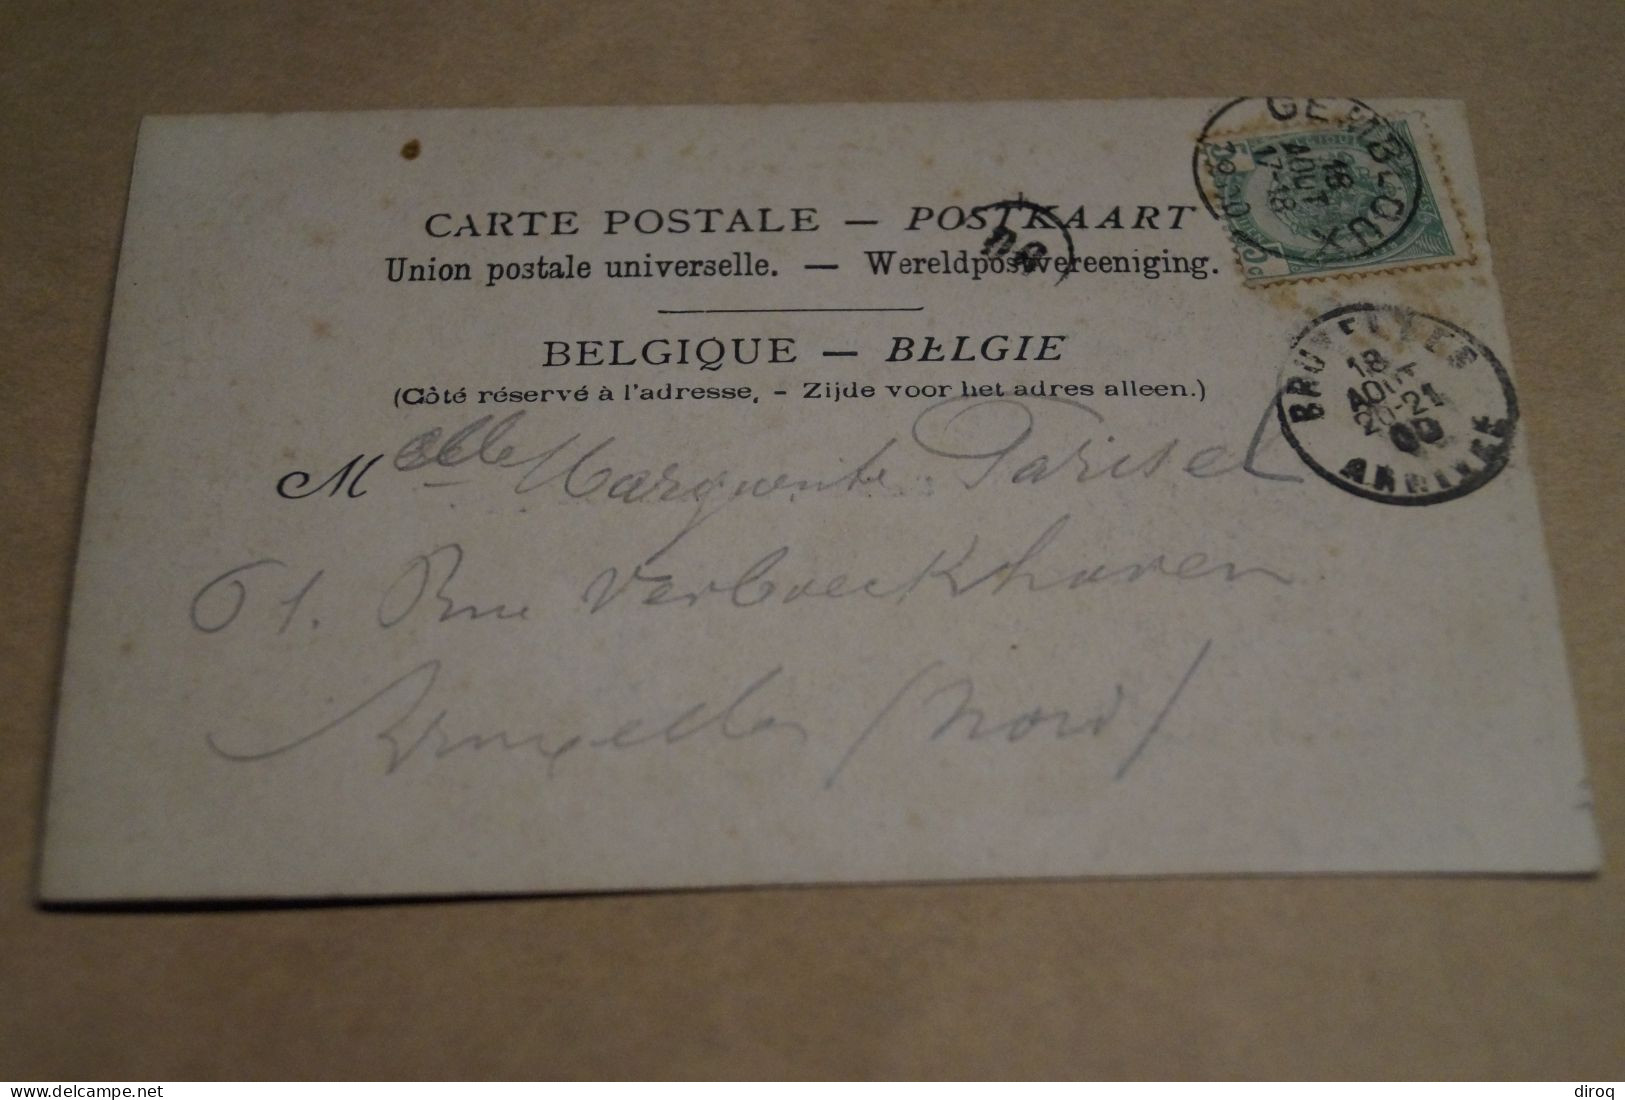 RARE,belle Carte,Gembloux, Station Météorologique, 1900,TB Oblitération, Pour Collection - Gembloux